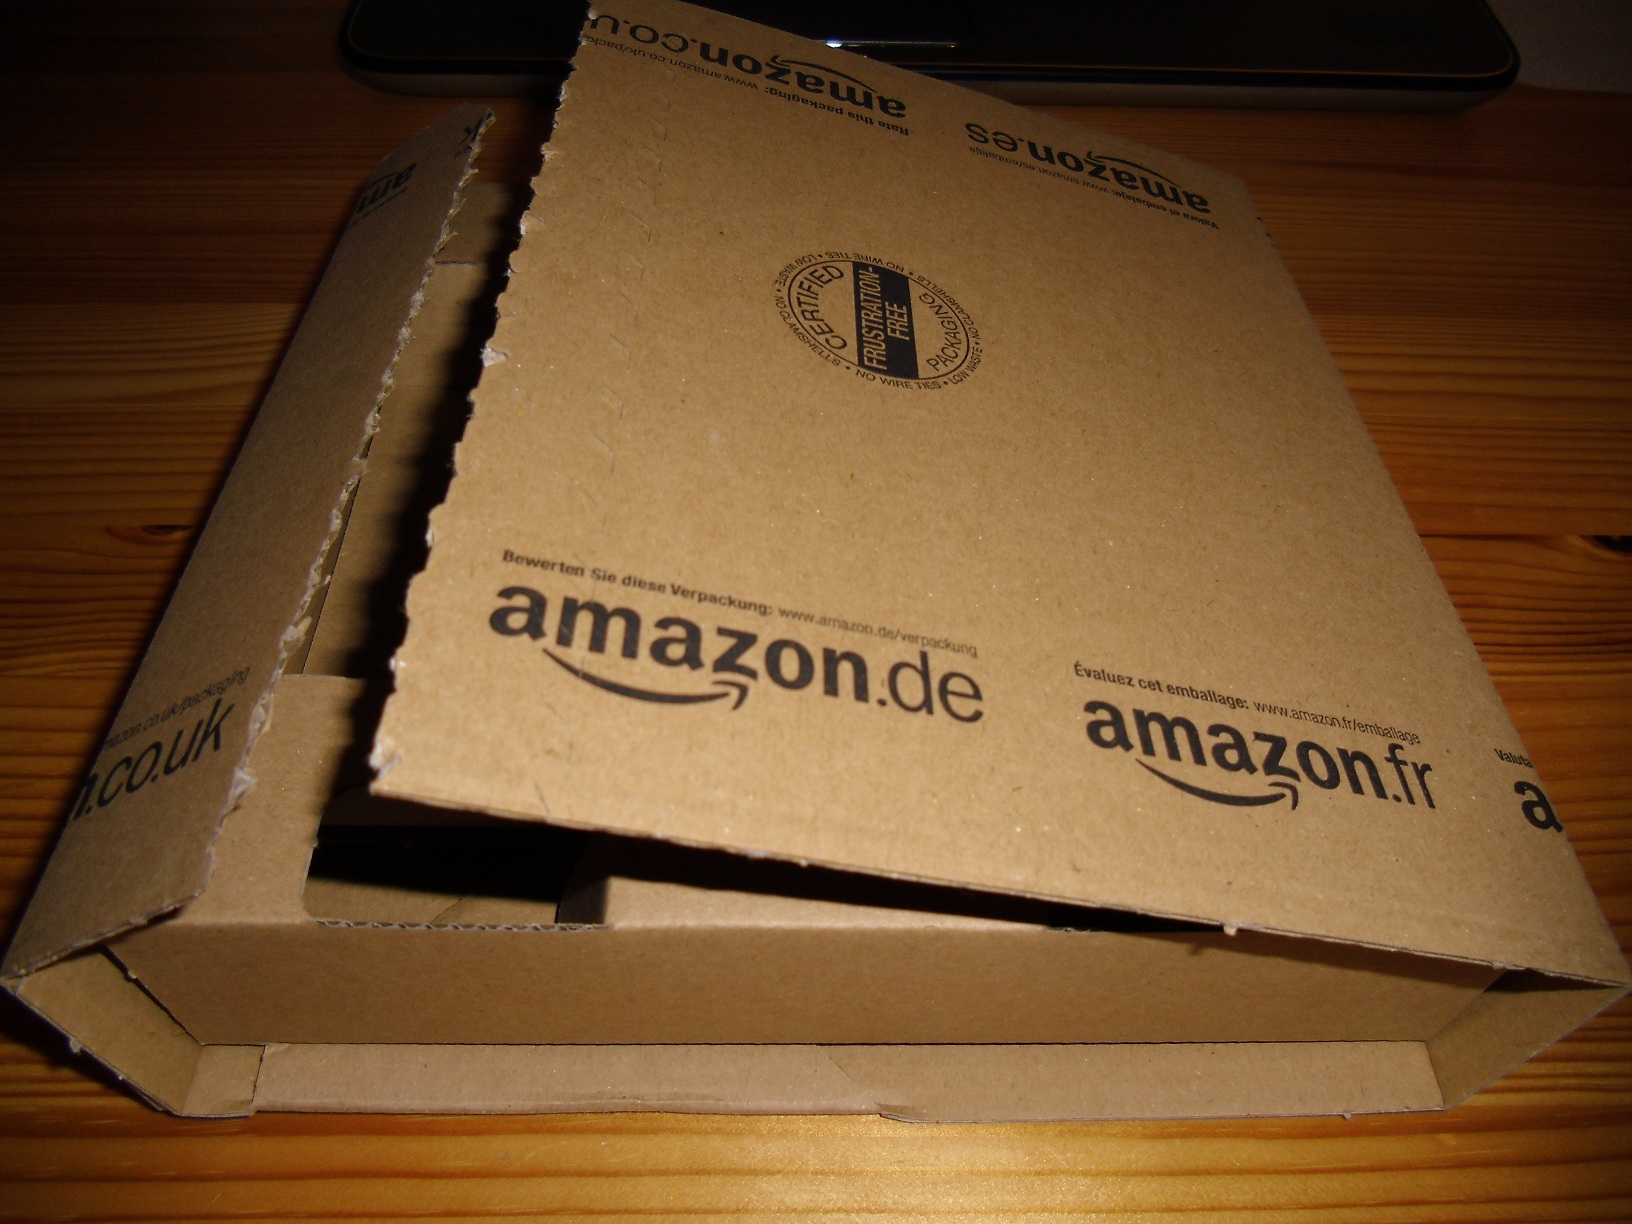 Amazon.de-Steelbook-Verpackung.jpg?tag=bdz-21